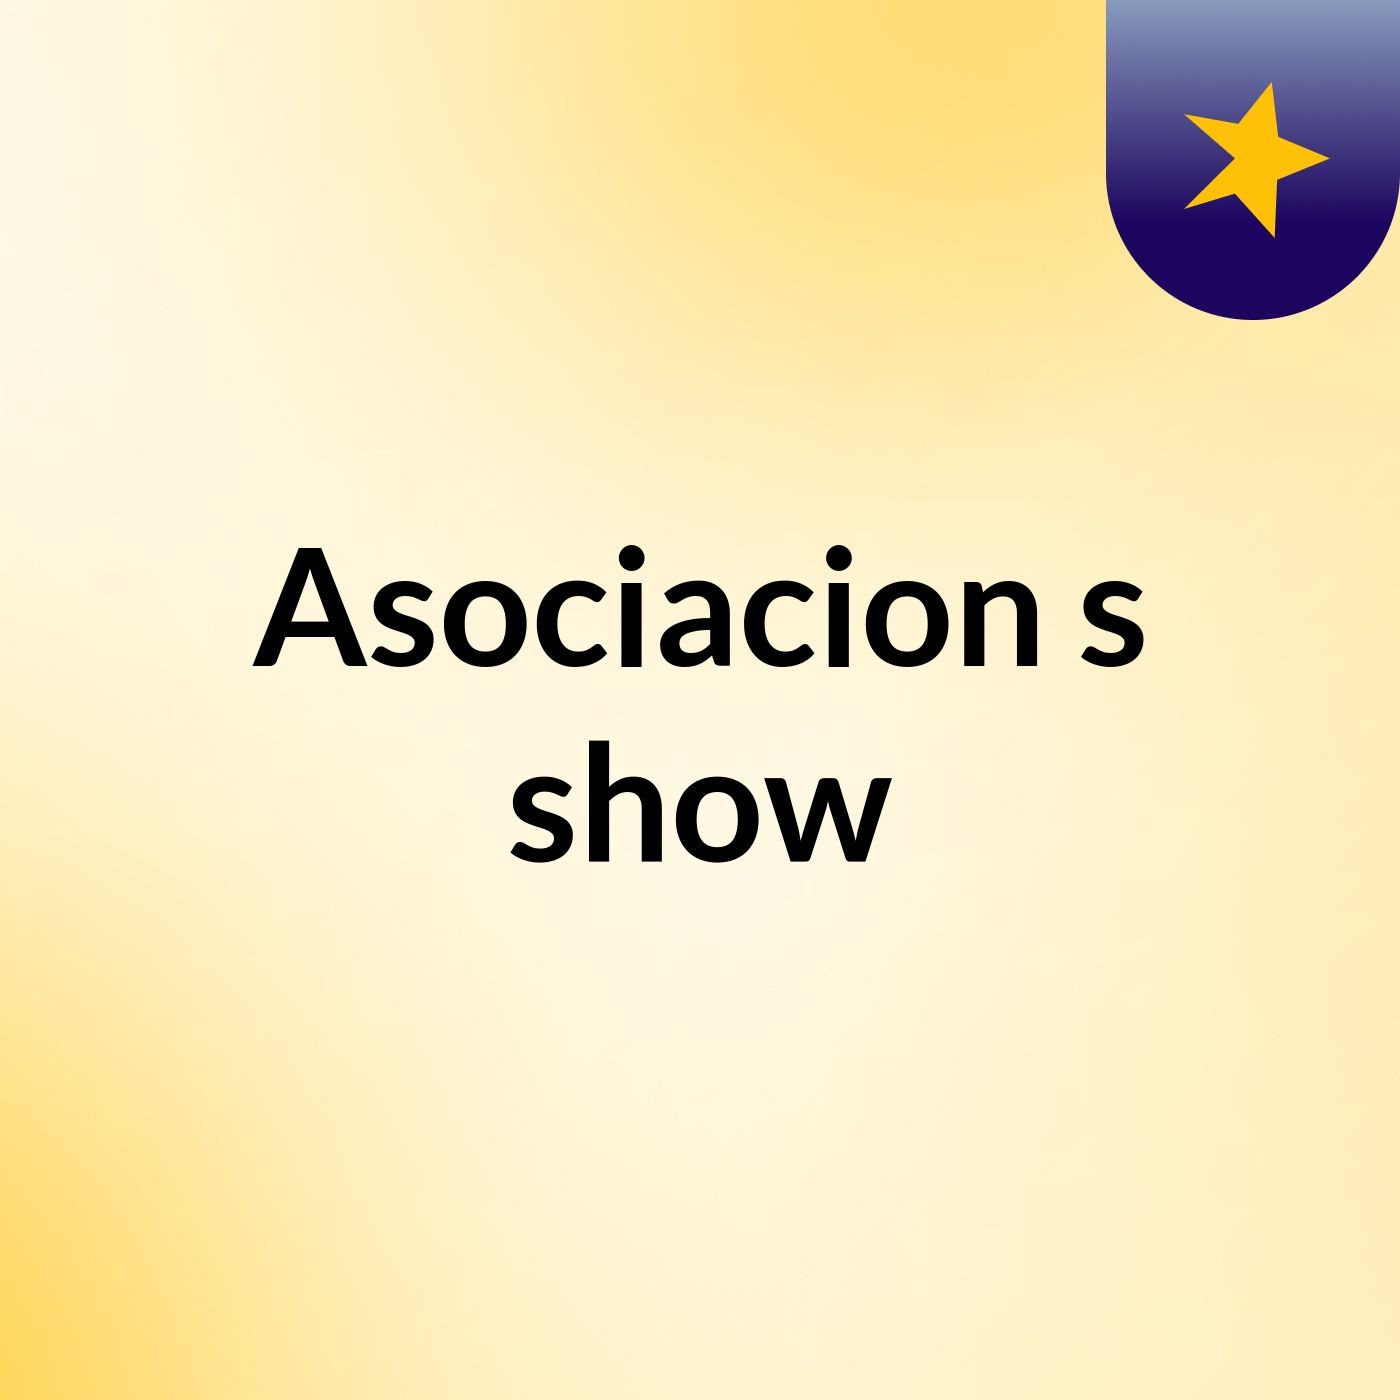 Asociacion's show